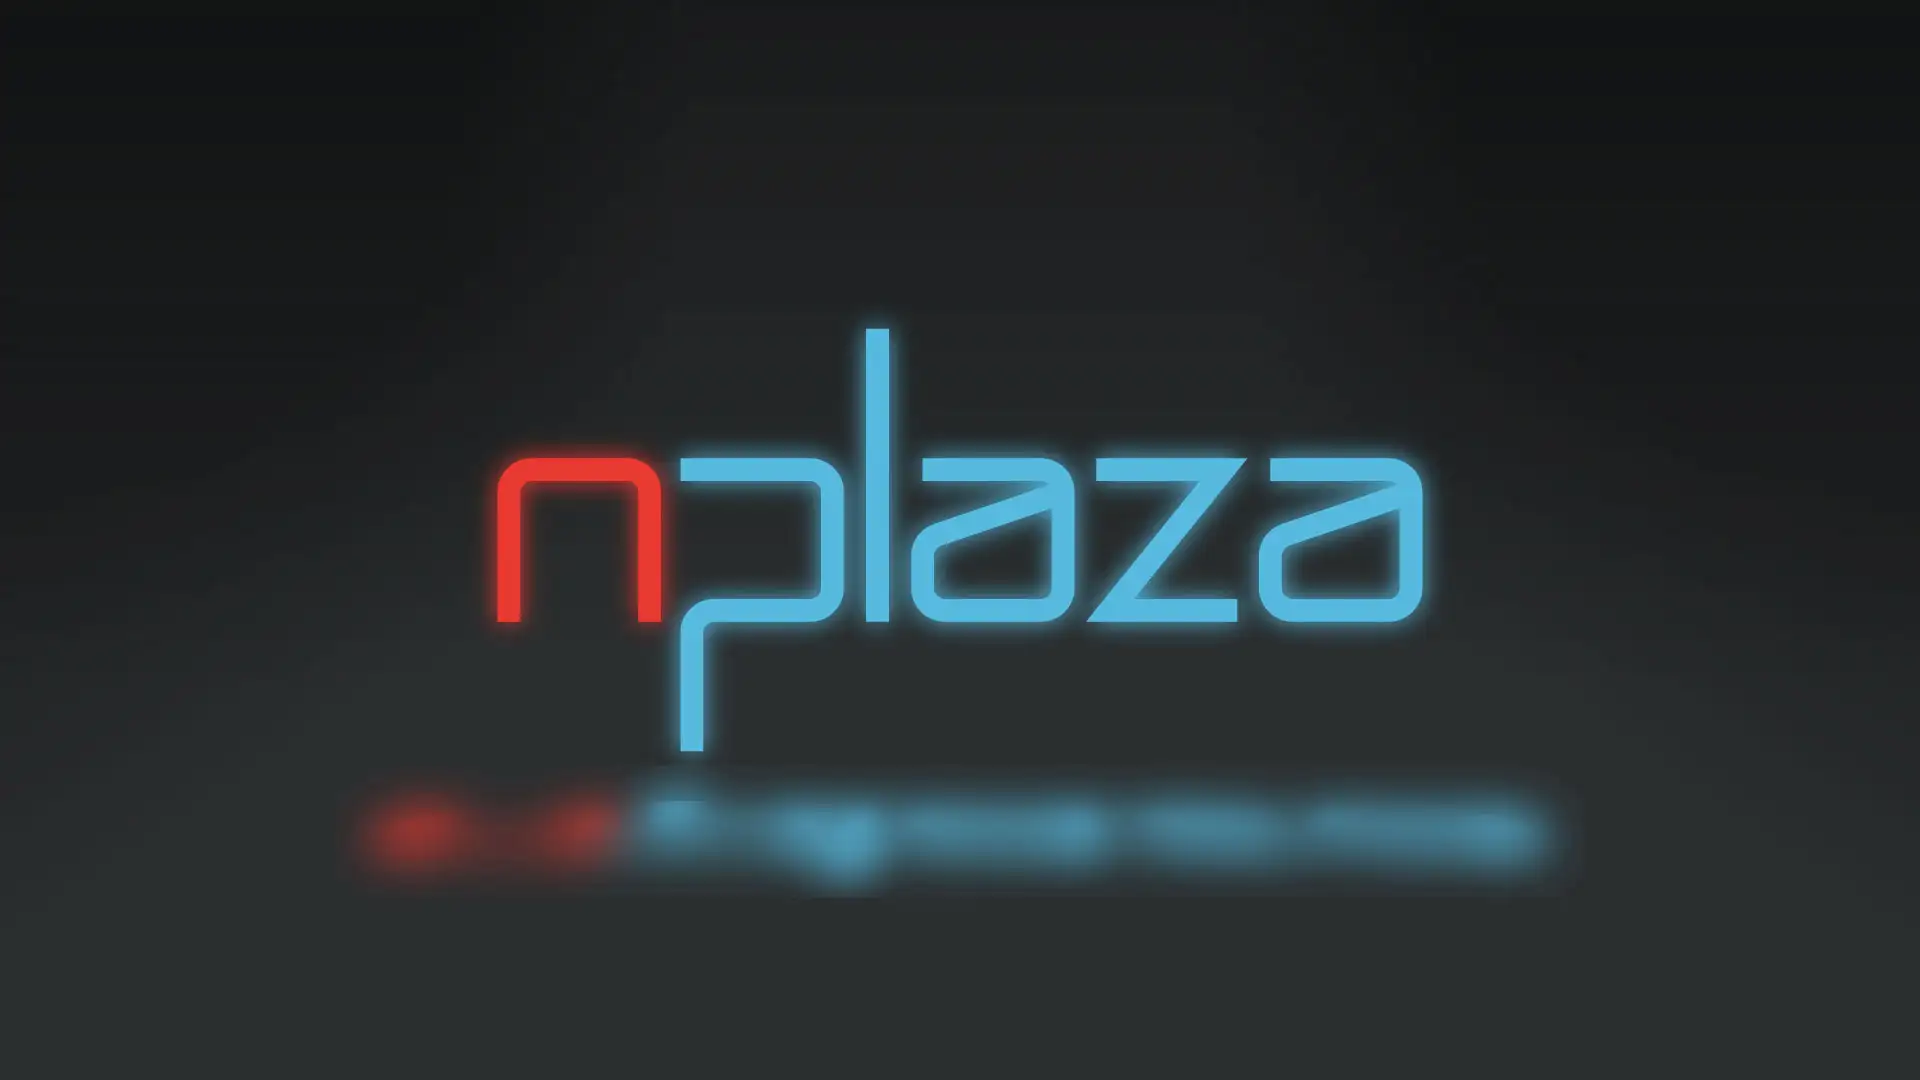 nplaza logo design by Dusty Drake